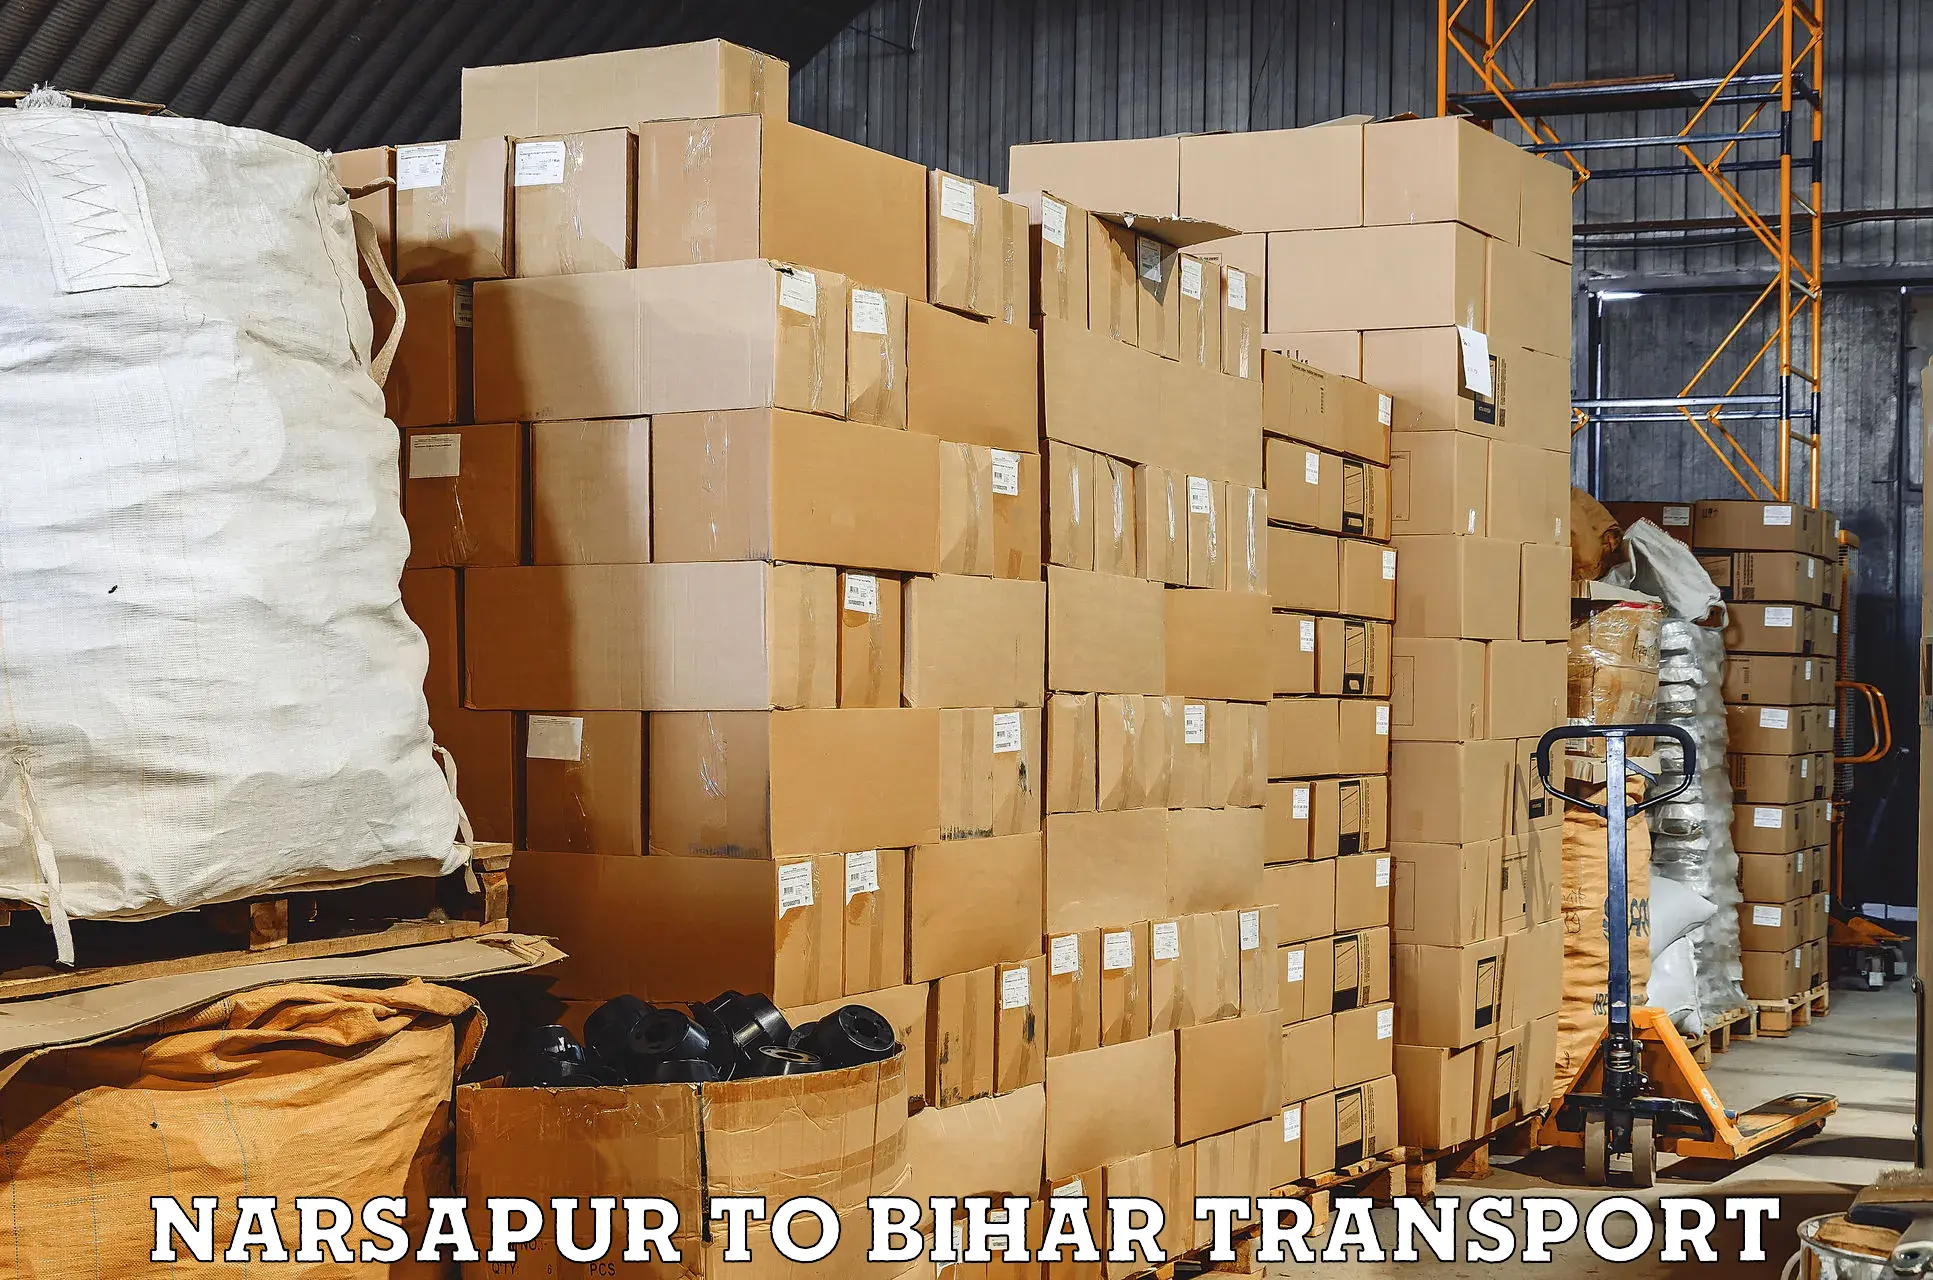 Vehicle transport services Narsapur to Dighwara